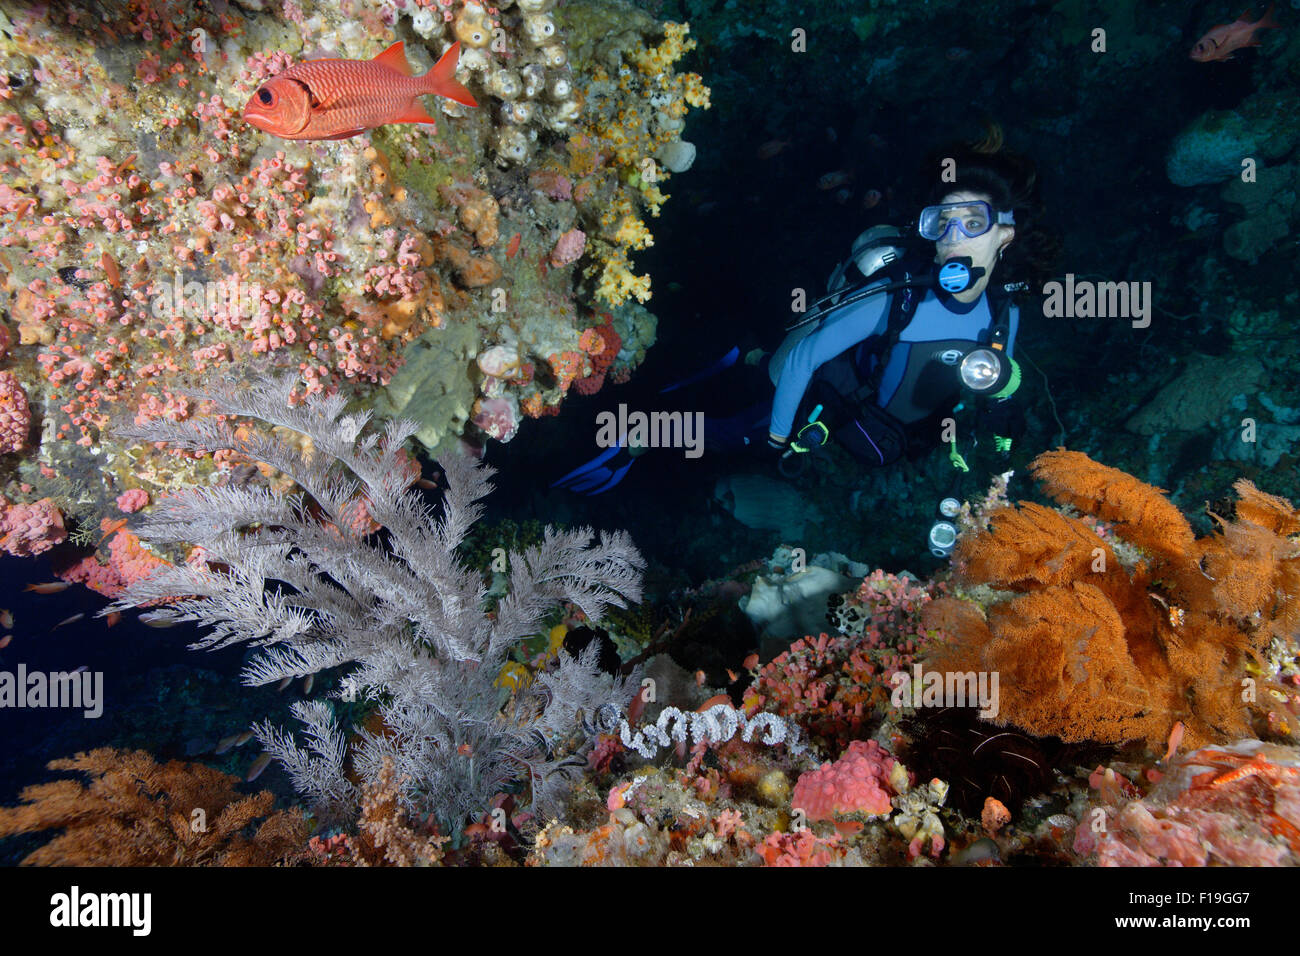 Px0452-D. scuba diver (modèle) parution explore cave ornée de corail noir. L'Indonésie, de l'océan Pacifique tropical. Photo C Banque D'Images